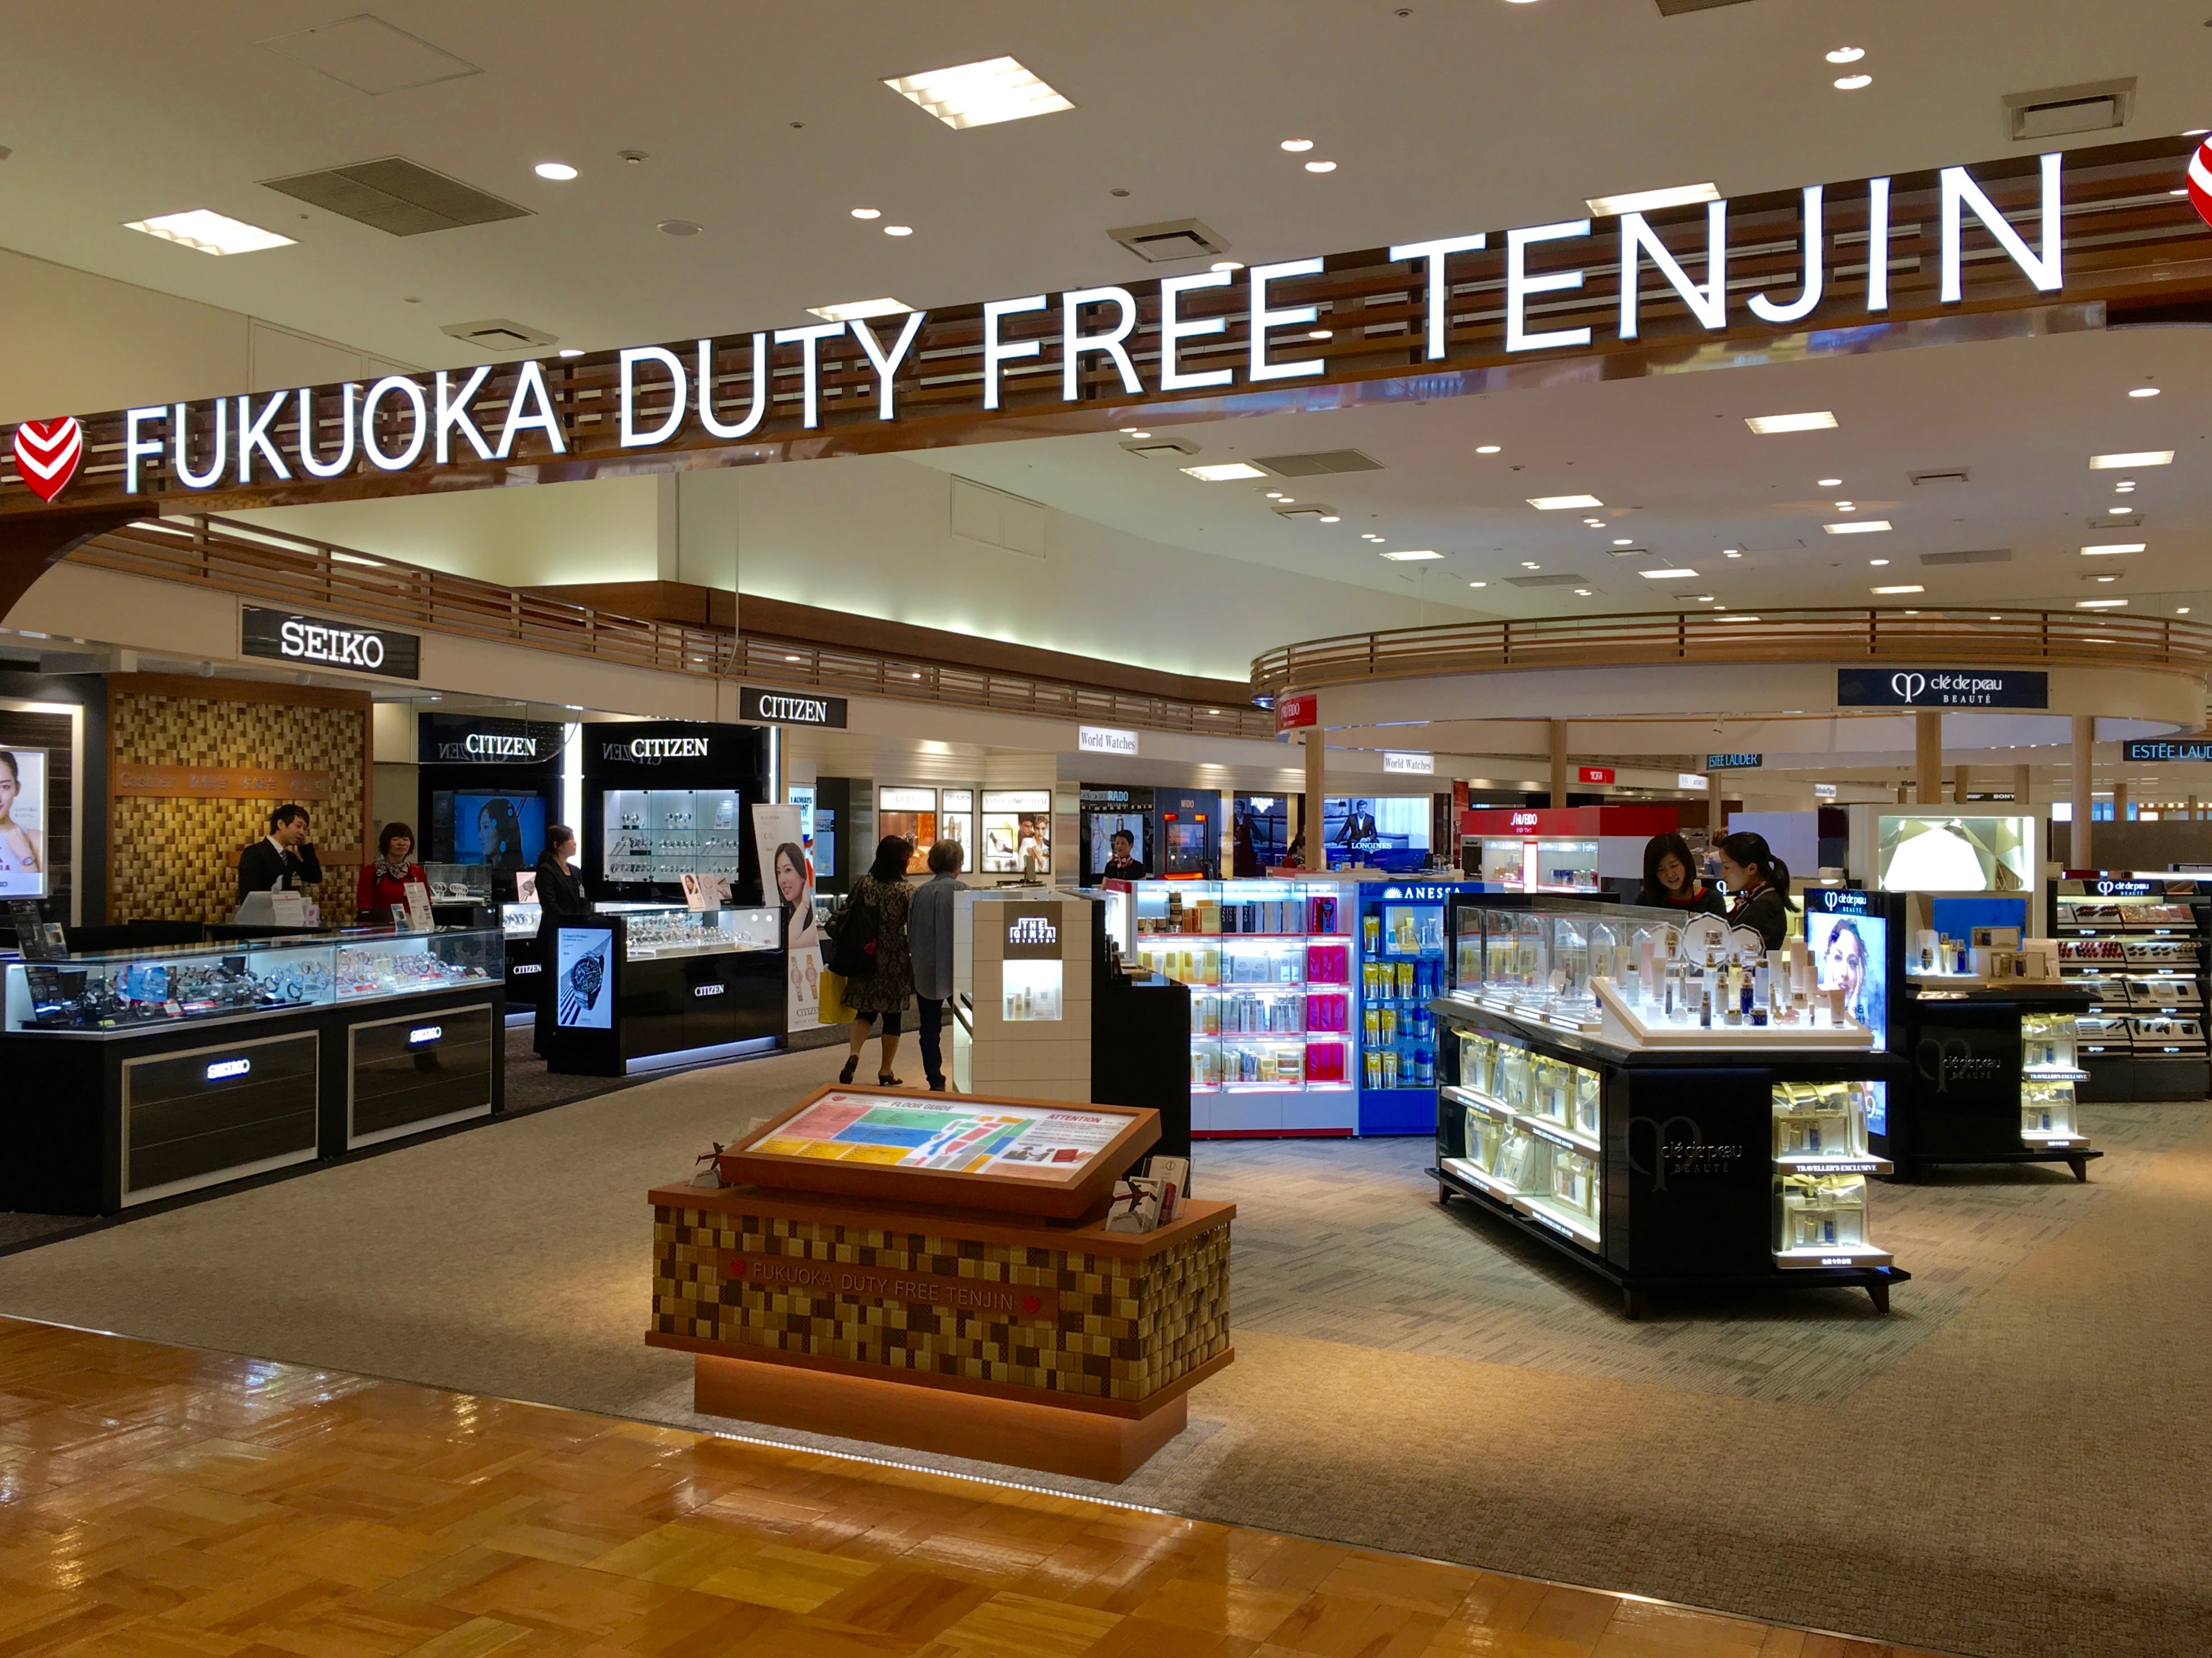 日本人も買い物できる 天神にオープンした空港型免税店の利用方法と注意点 Fukuoka Duty Free Tenjin タイ一択